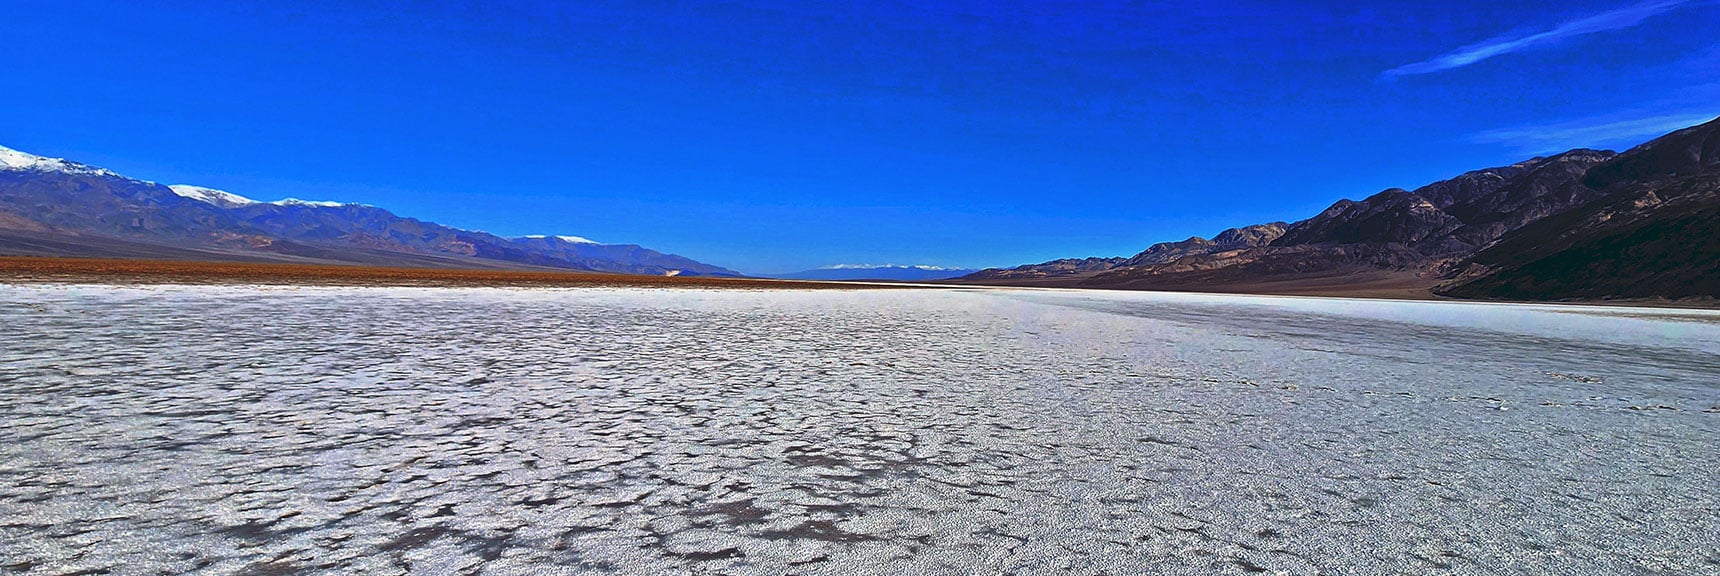 View North Up a Major Salt Flat in Mid Death Valley | Death Valley Crossing | Death Valley National Park, California | David Smith | LasVegasAreaTrails.com